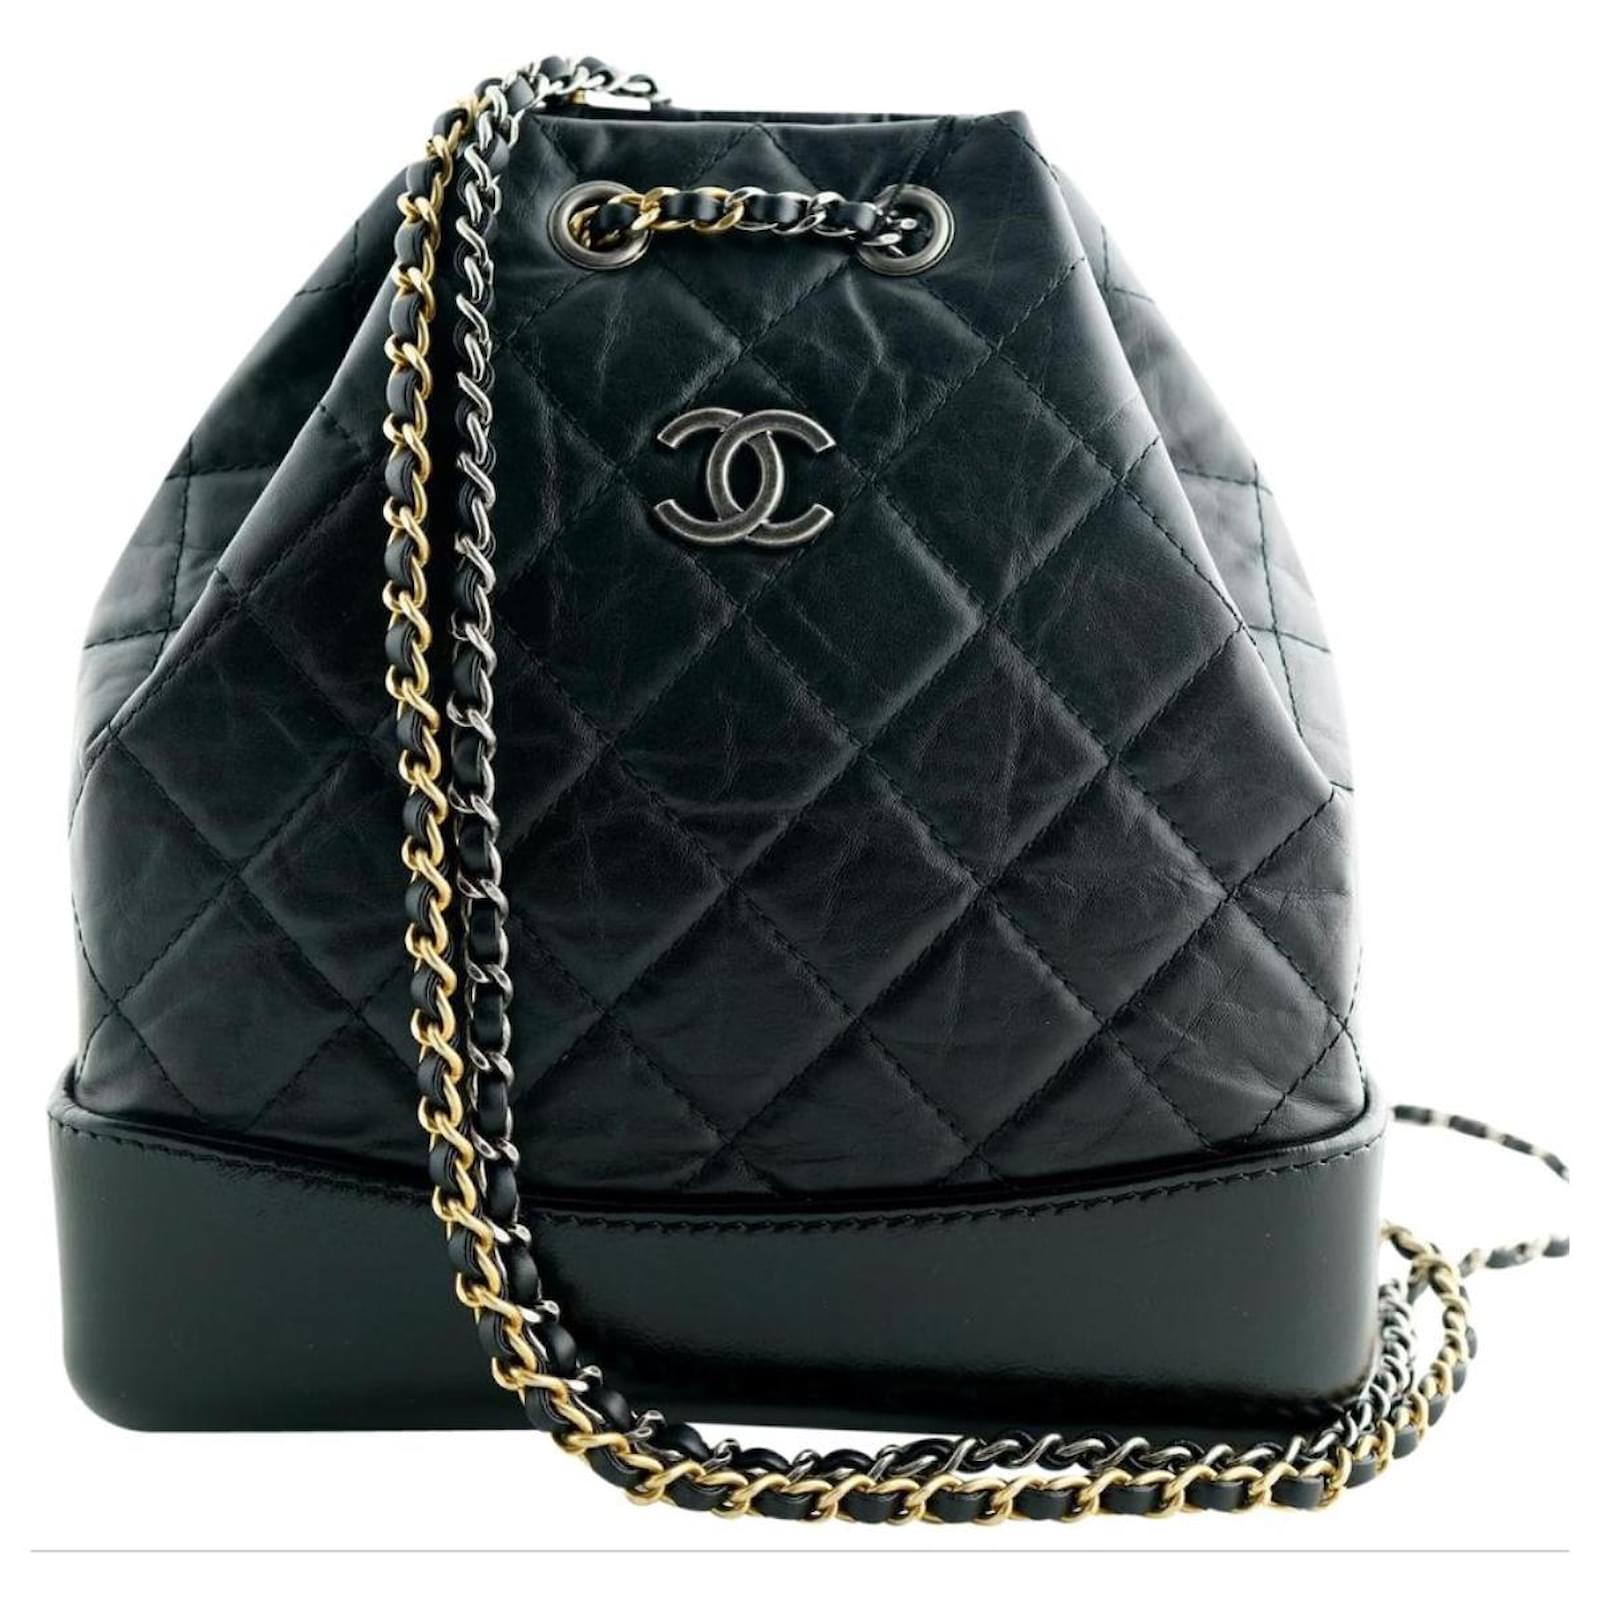 Die neue Gabrielle-Tasche von Chanel